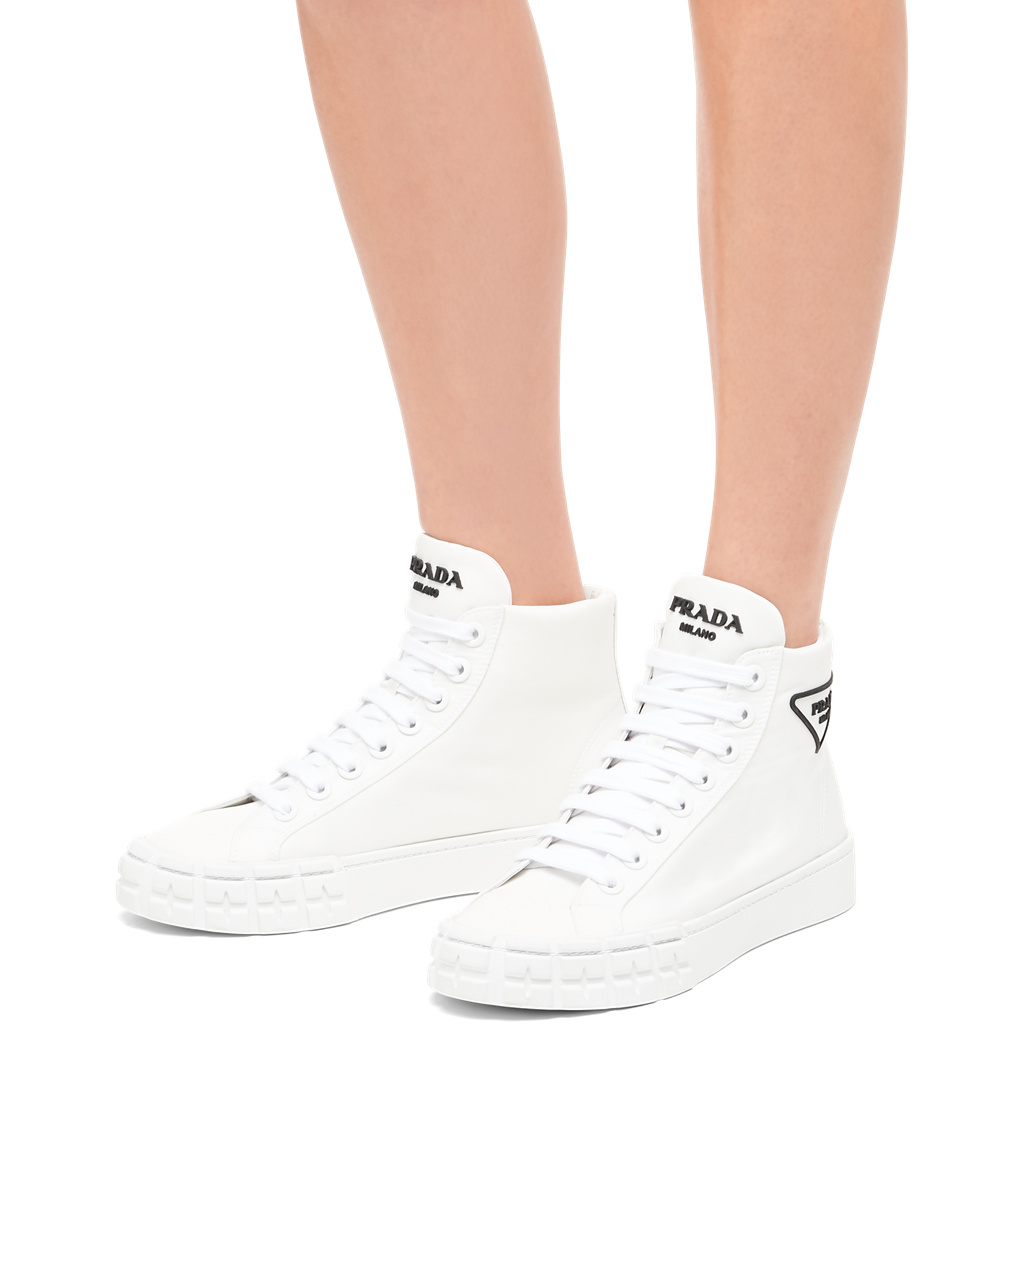 Prada Wheel Re-nylon Gabardine Sneakers White | 17FKHYNIV